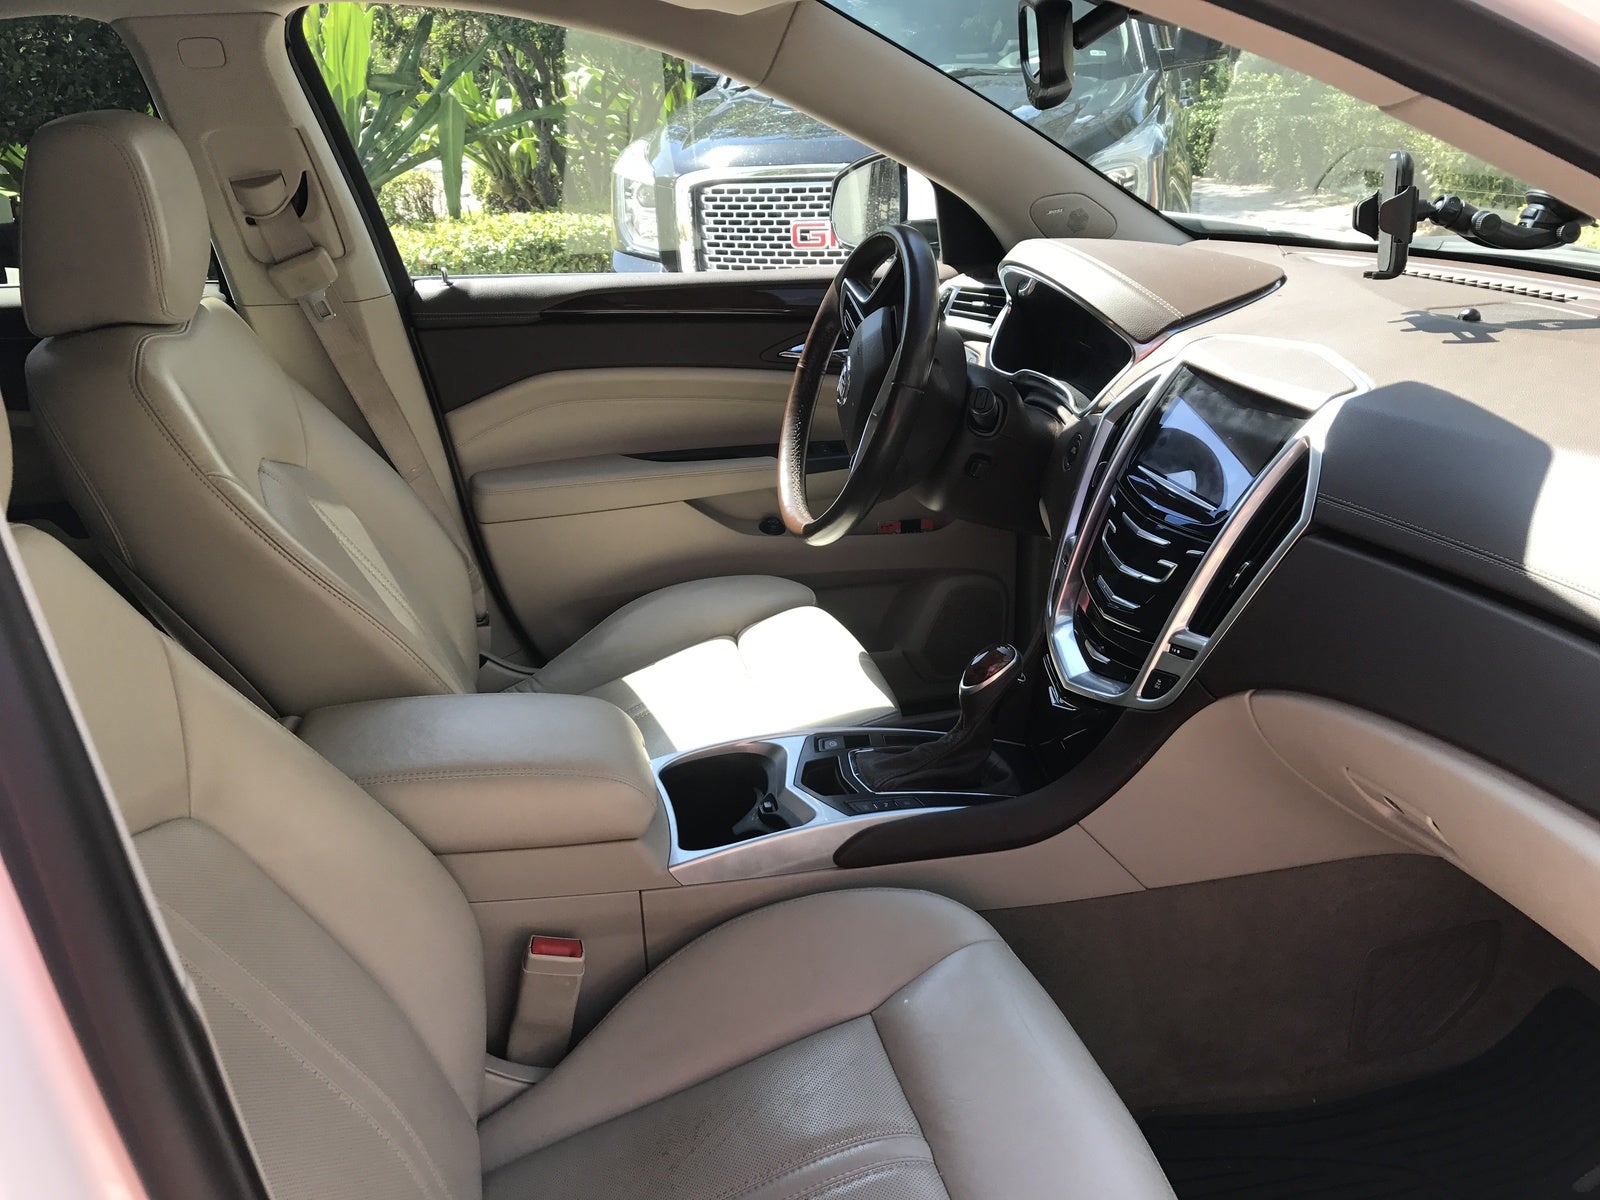 2013 Cadillac Srx Interior Pictures Cargurus